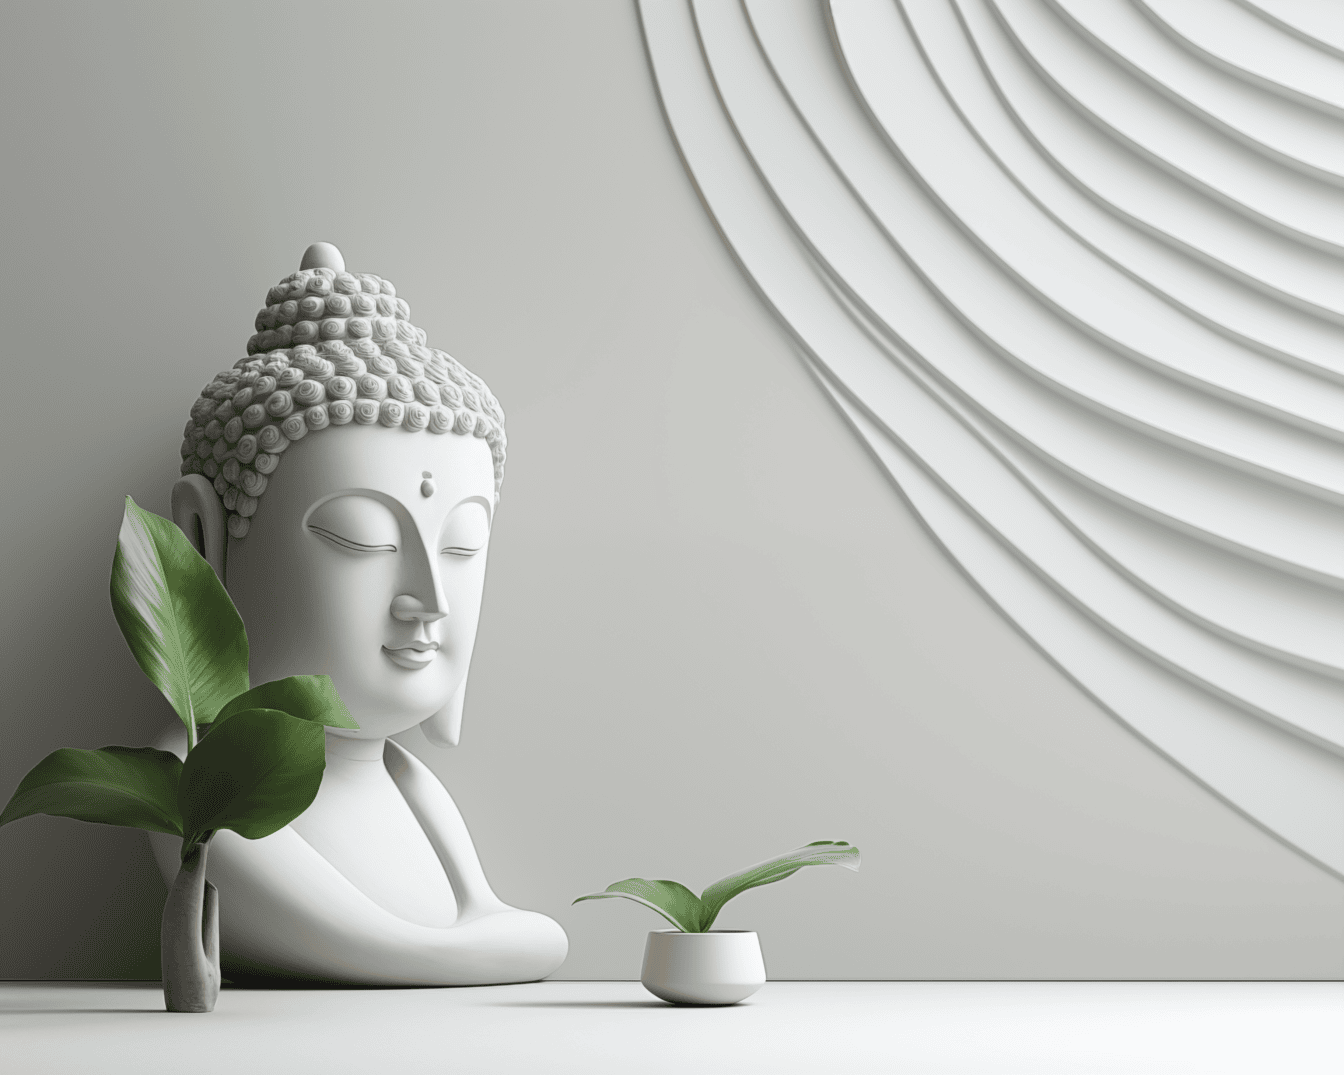 Design interior minimalista com estatueta branca de Buda ao lado de um vaso e com decoração moderna em uma parede branca